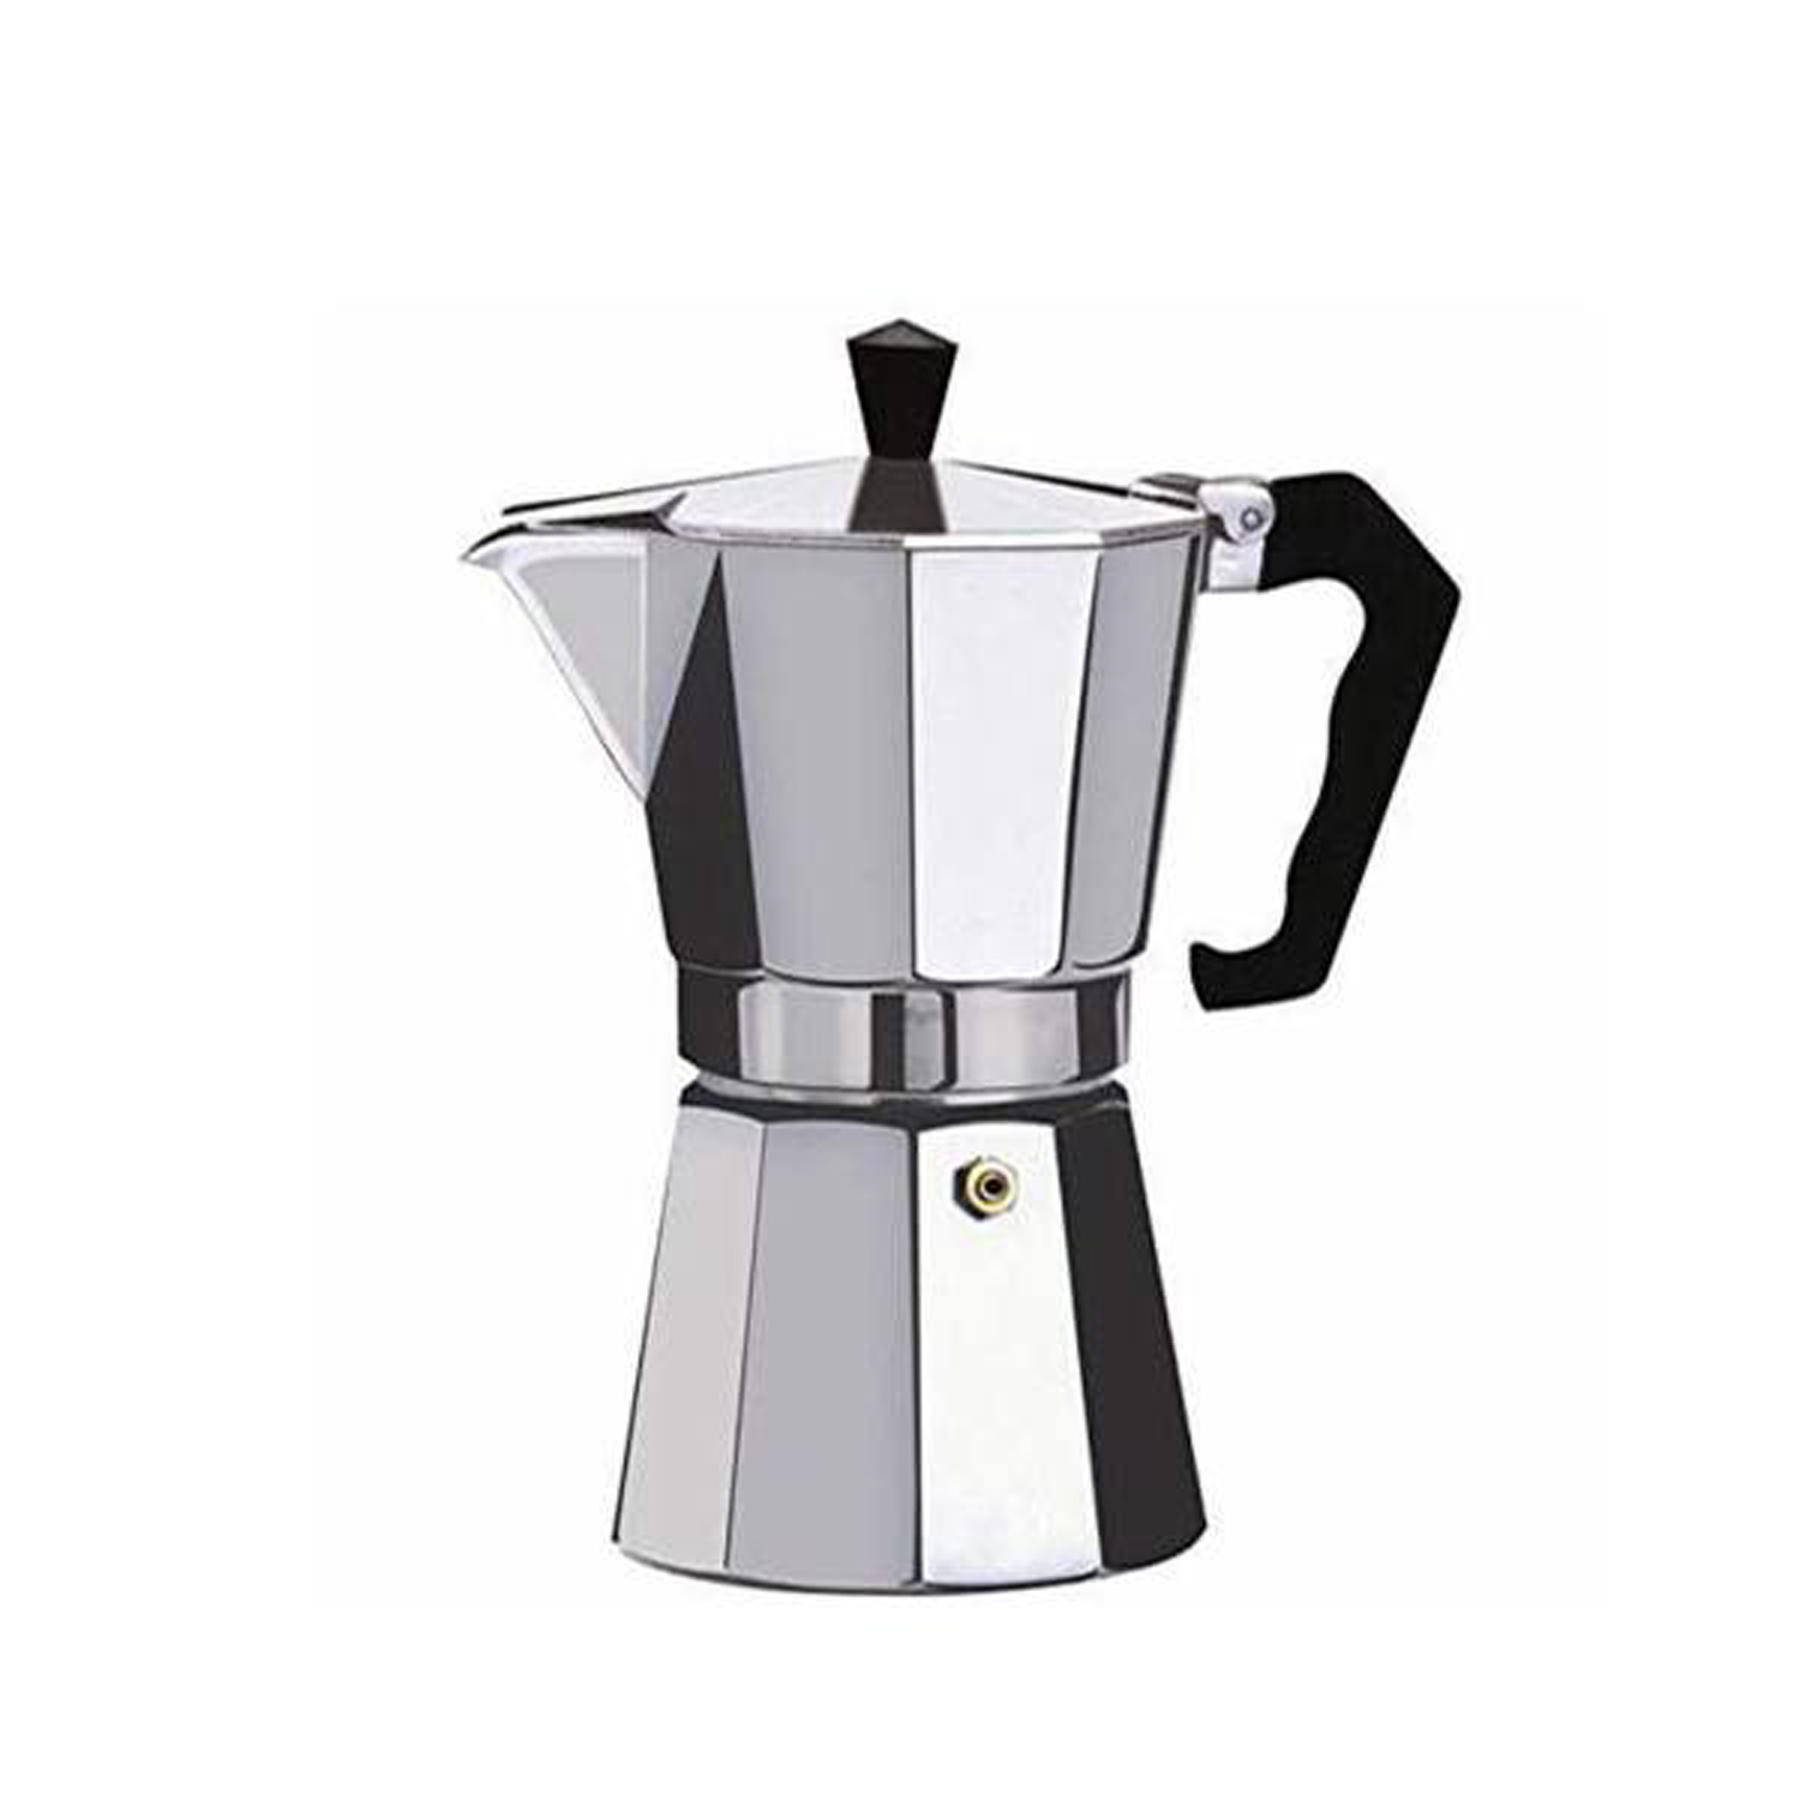 قهوه ساز مدل coffee 2 cup کد 32002